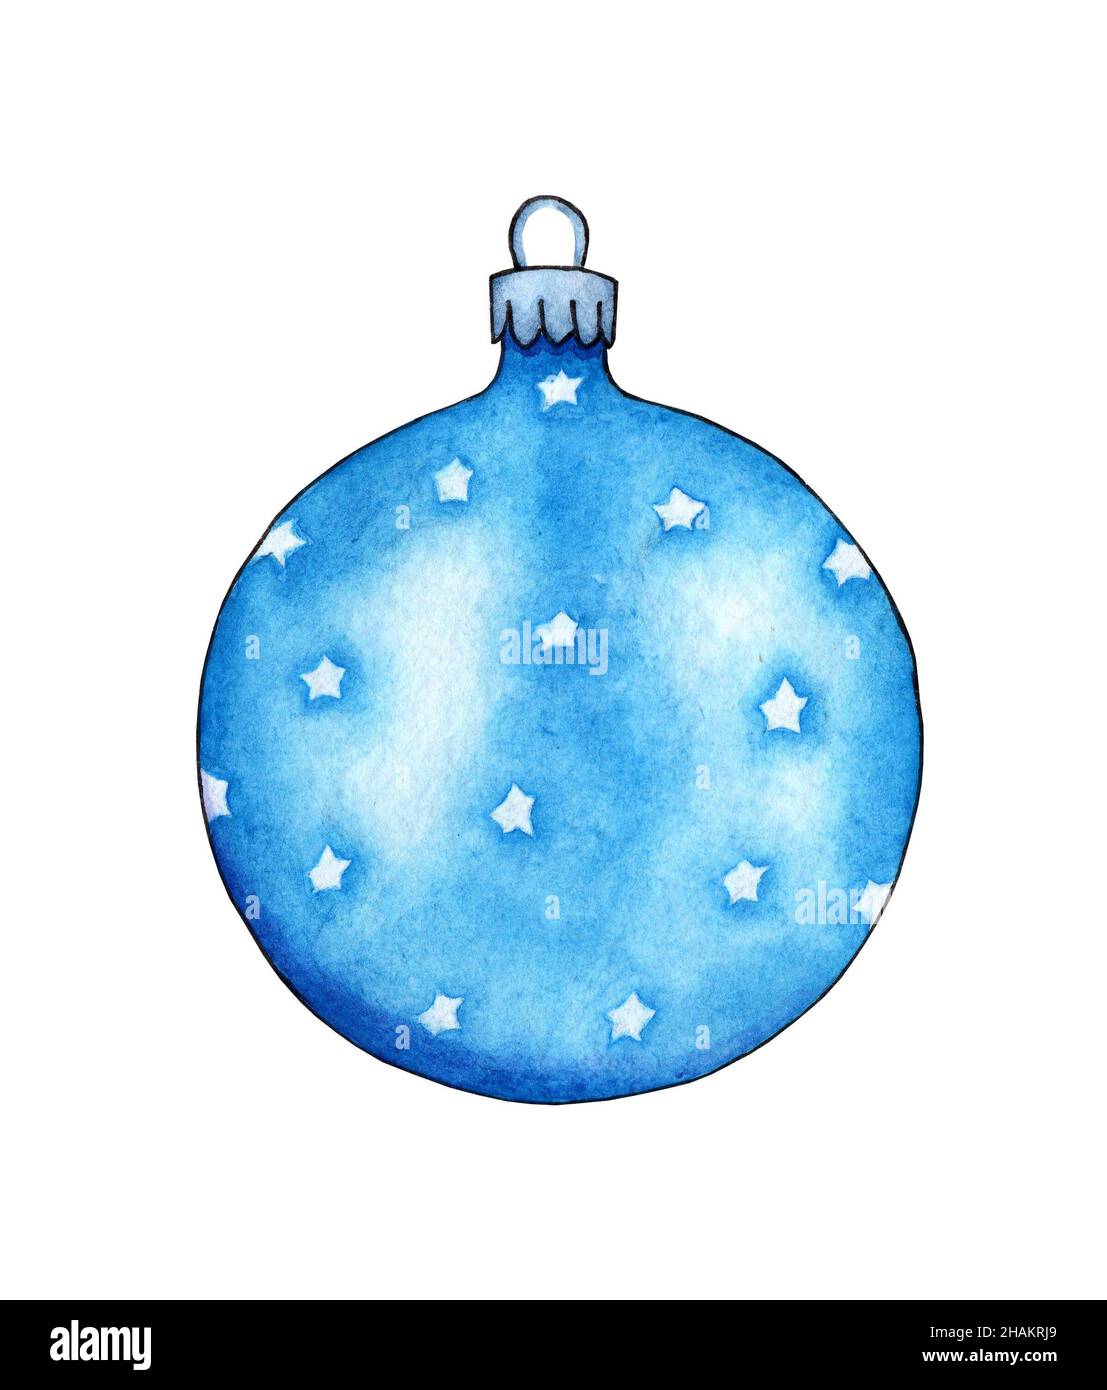 Peinture aquarelle de boule de verre bleue avec étoiles.Boule du nouvel an  pour décorer un arbre de Noël, décor festif pour Noël et nouvel an.Isolé  Photo Stock - Alamy